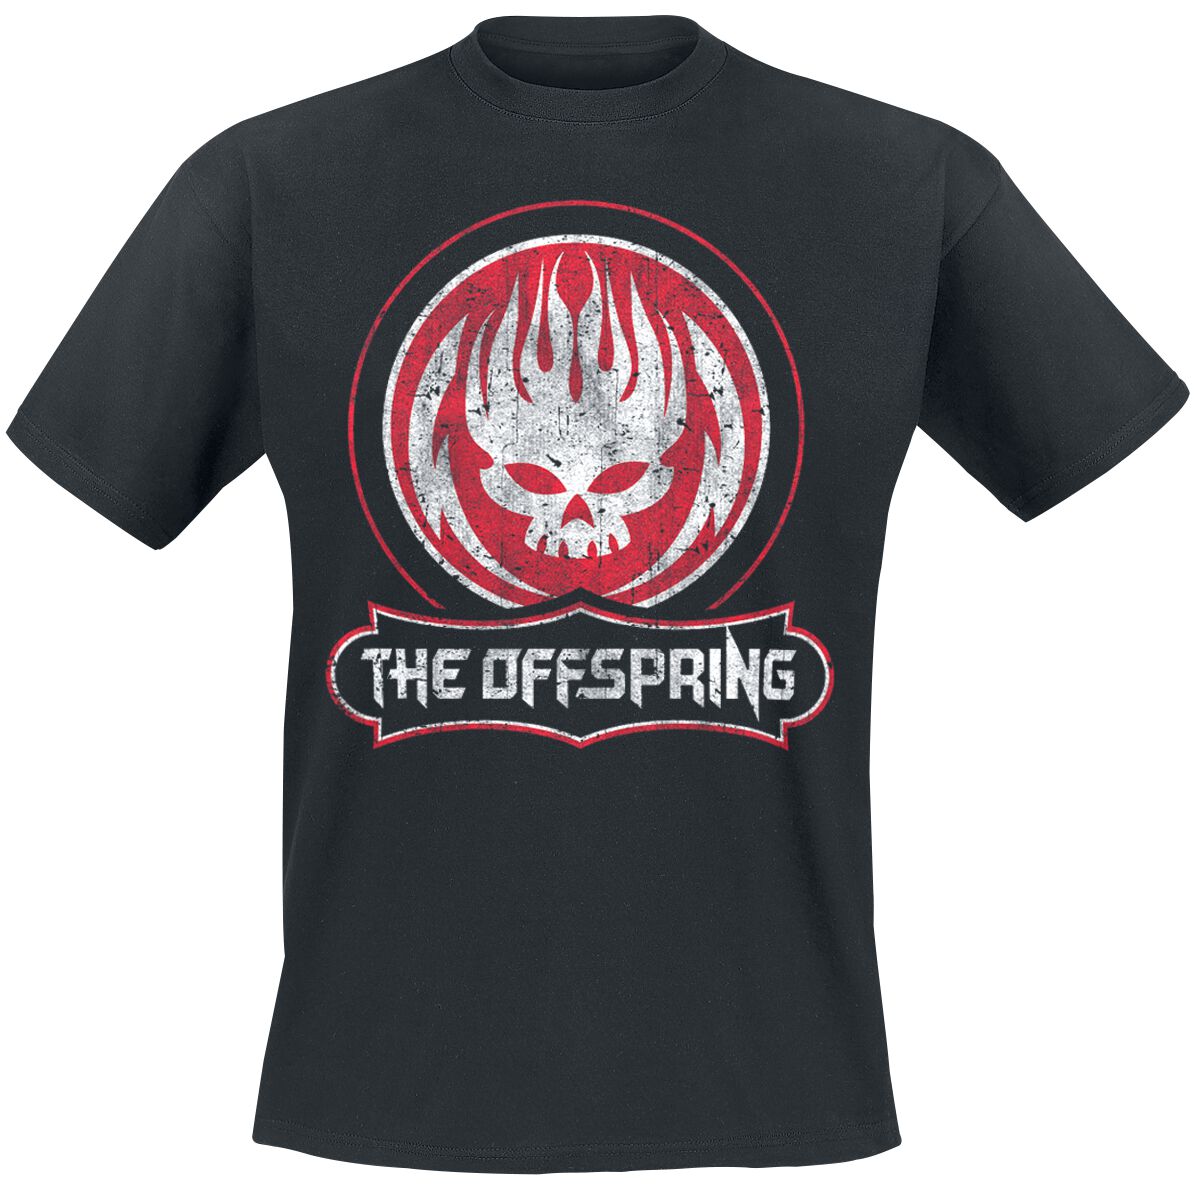 The Offspring T-Shirt - Distressed Skull - S bis XXL - für Männer - Größe L - schwarz  - Lizenziertes Merchandise!